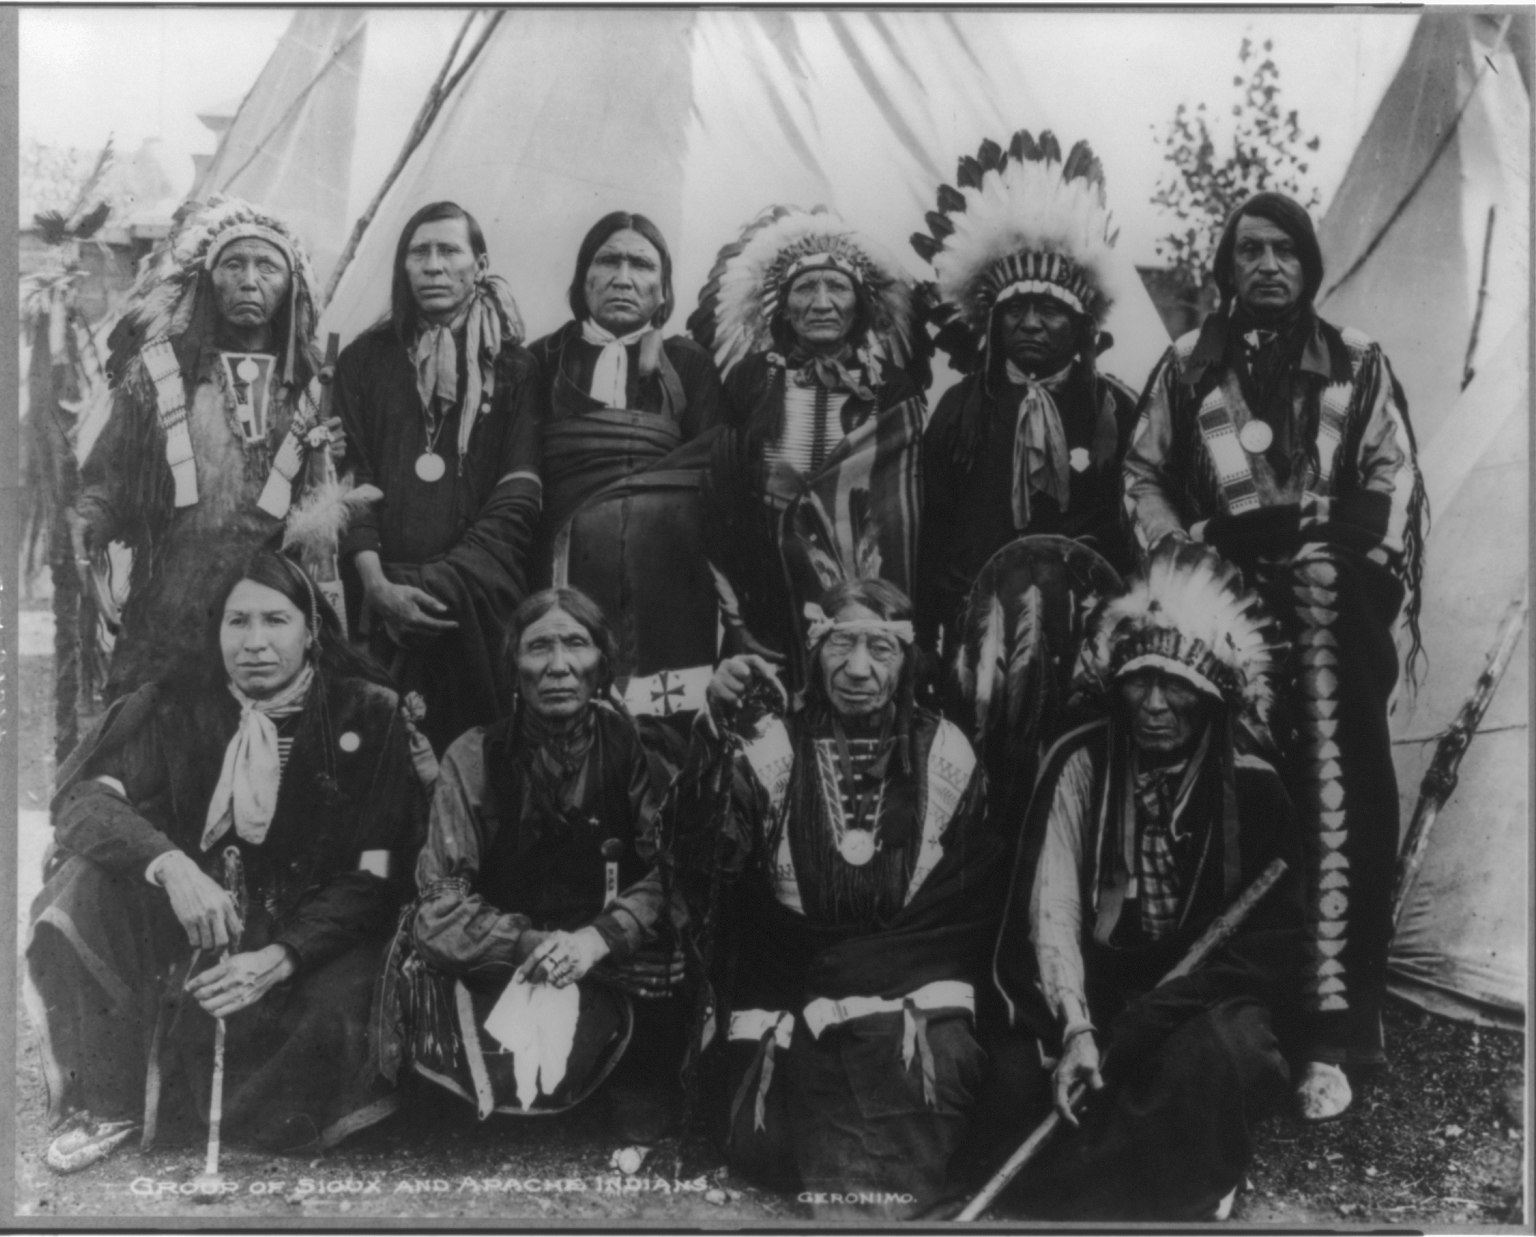 Апачи групп. Индейцы Северной Америки племена Апачи. Индейцы Северной Америки Сиу. Алгонкинские индейцы Северной Америки. Индейцы племени Апачи.